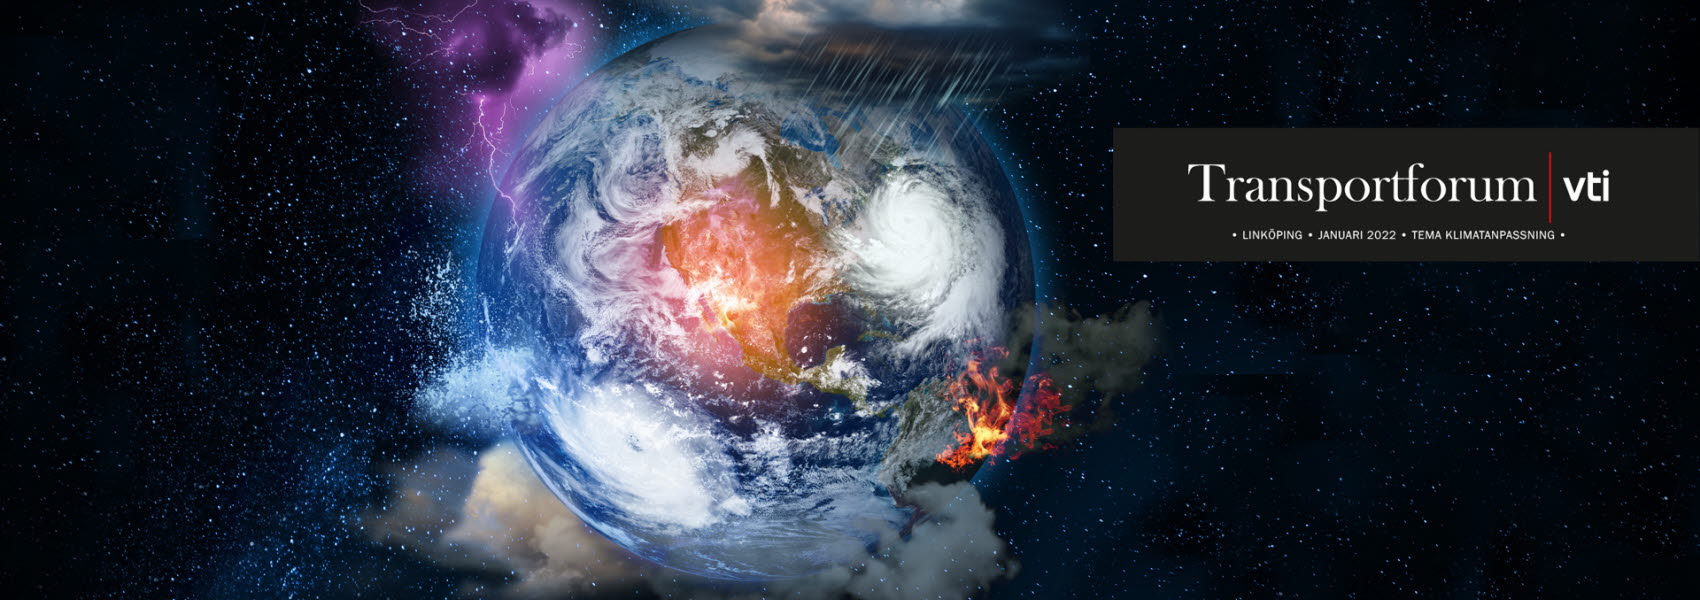 En jordglob som visar olika väderfenomen och brand.